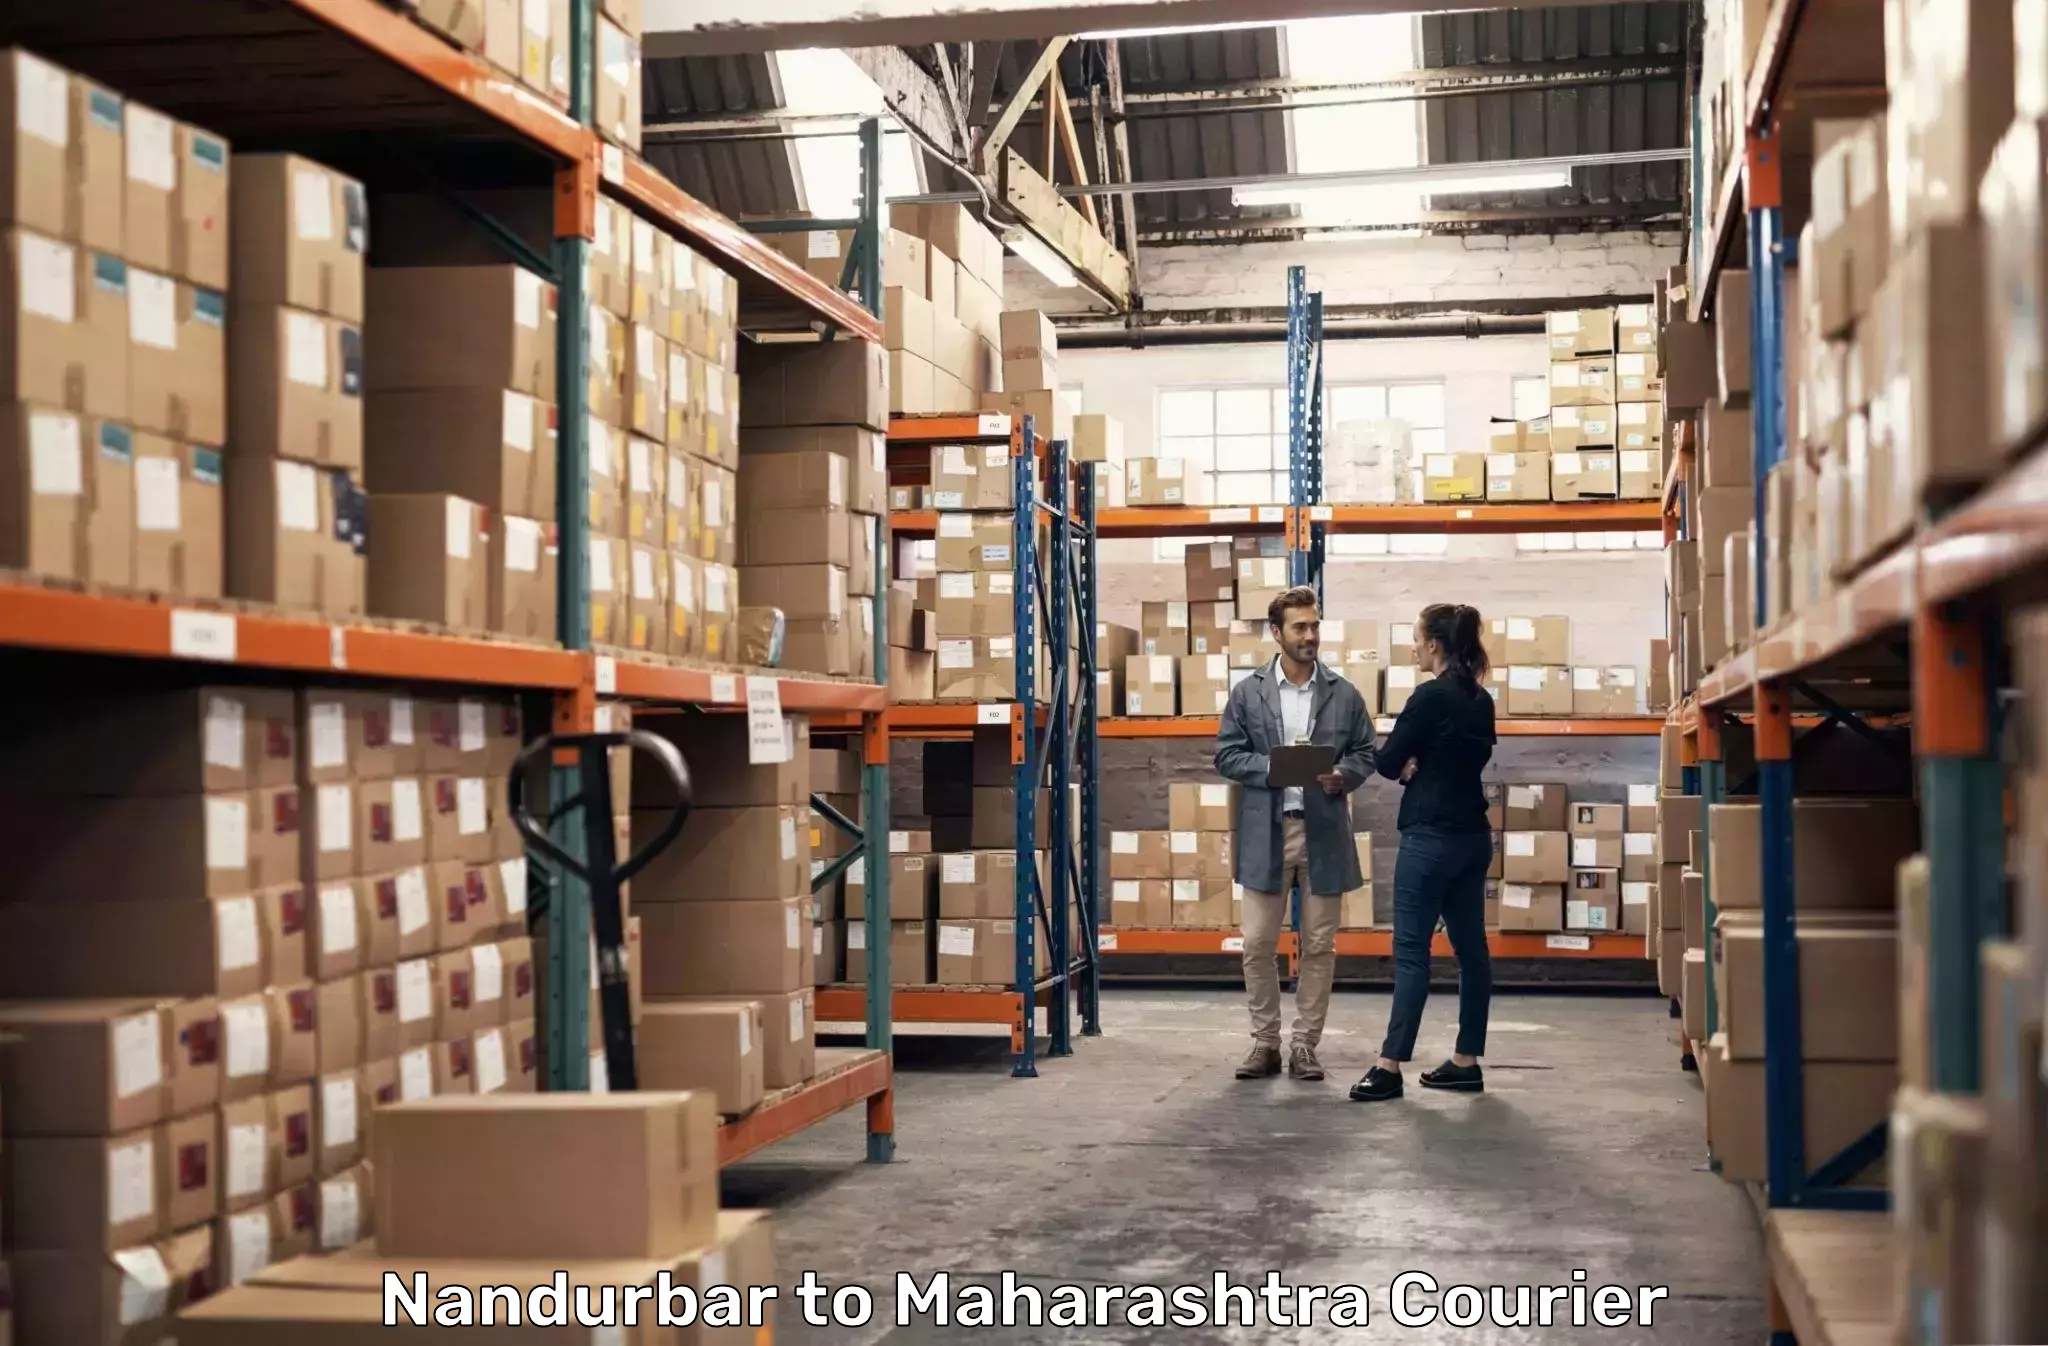 Fast delivery service Nandurbar to Dapoli